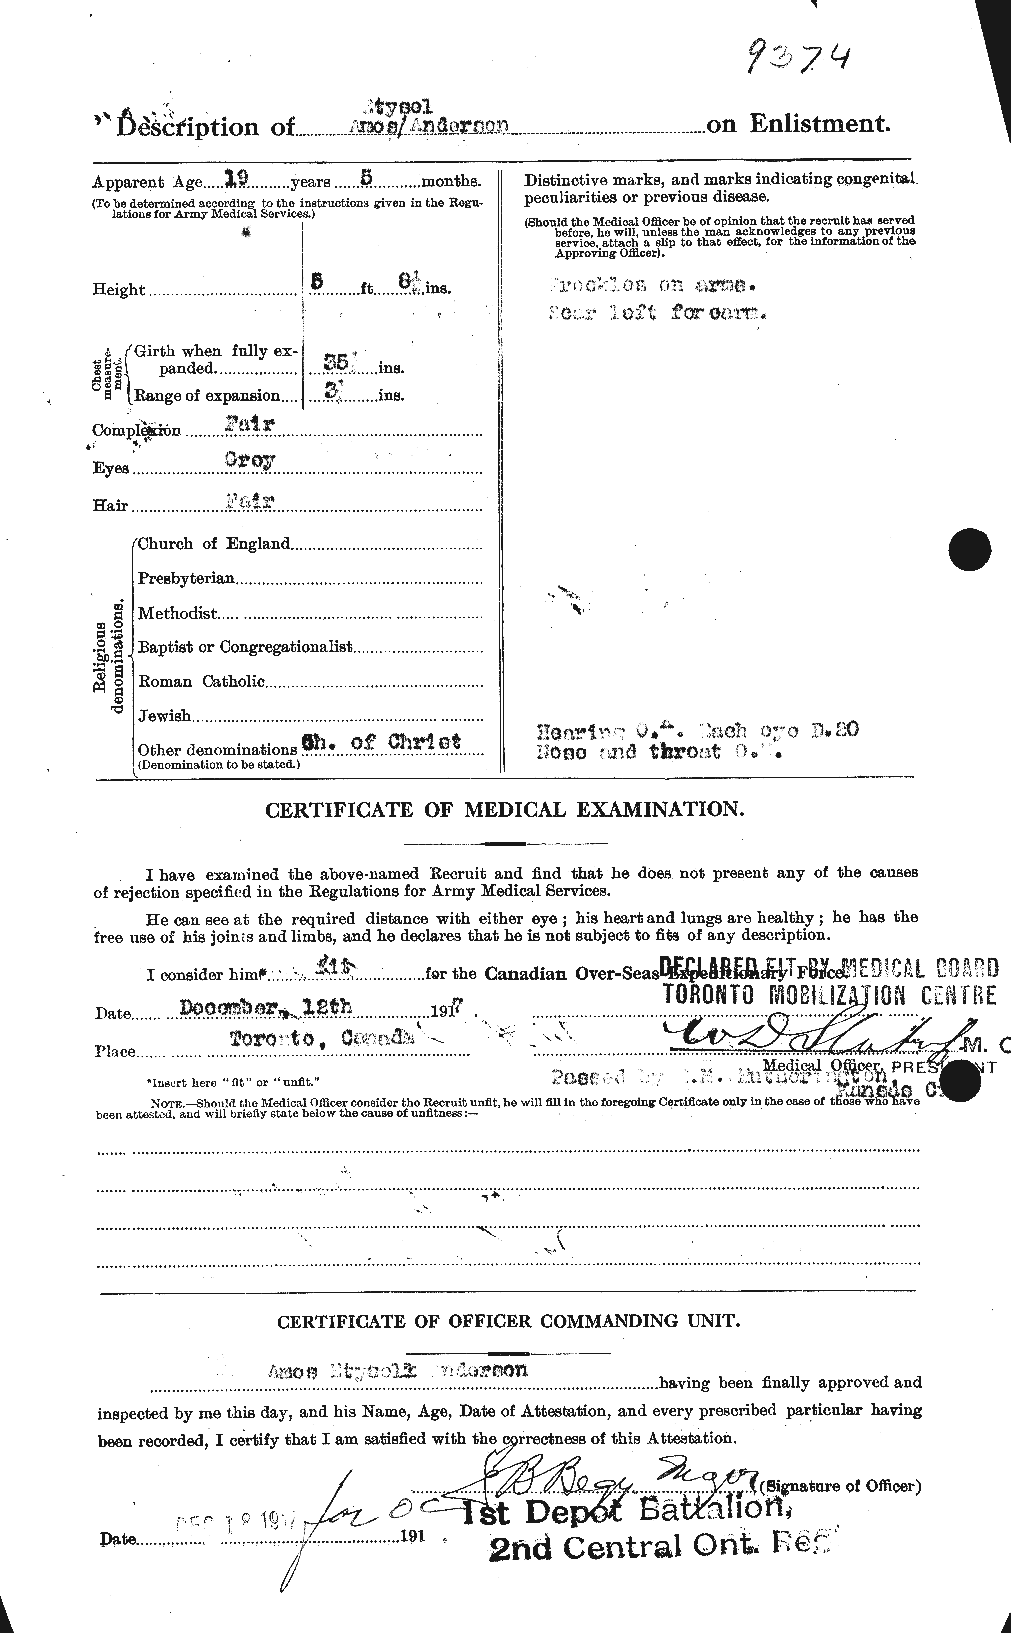 Dossiers du Personnel de la Première Guerre mondiale - CEC 209436b